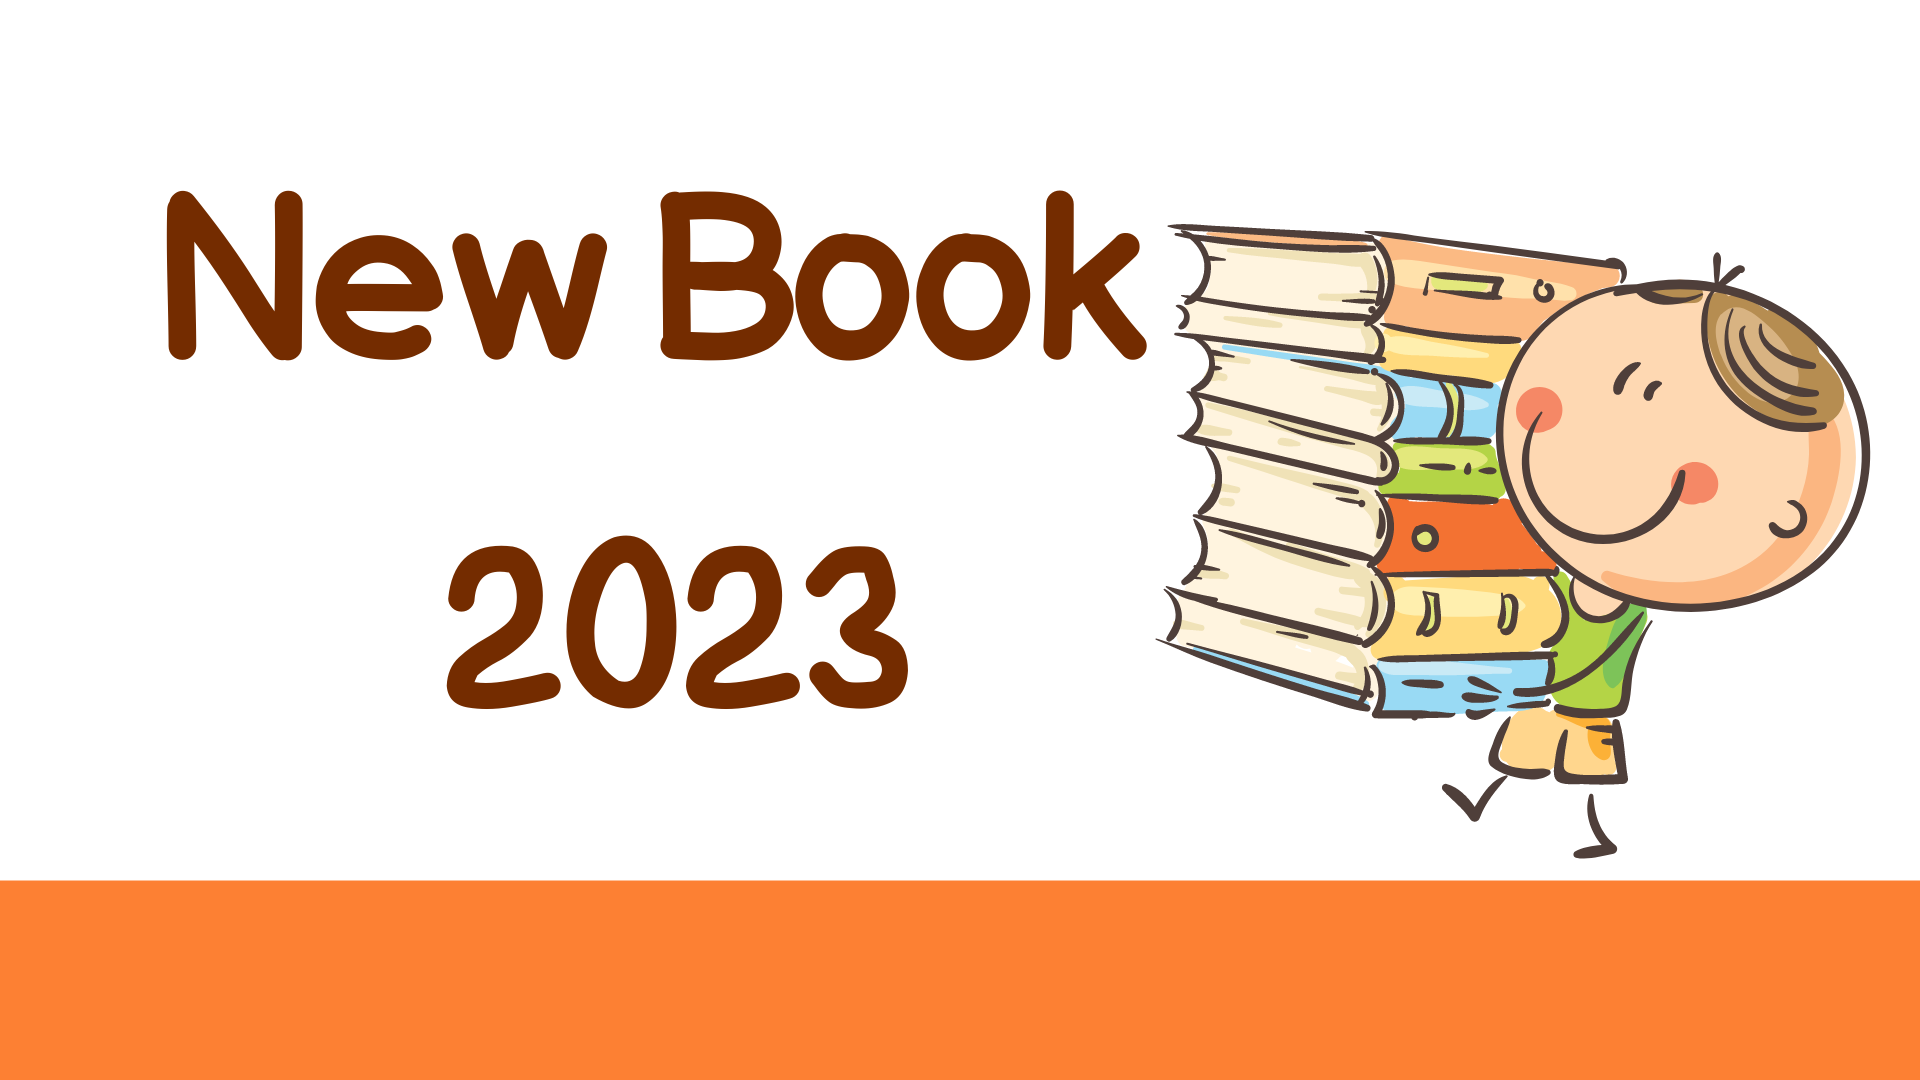 New Book 2023